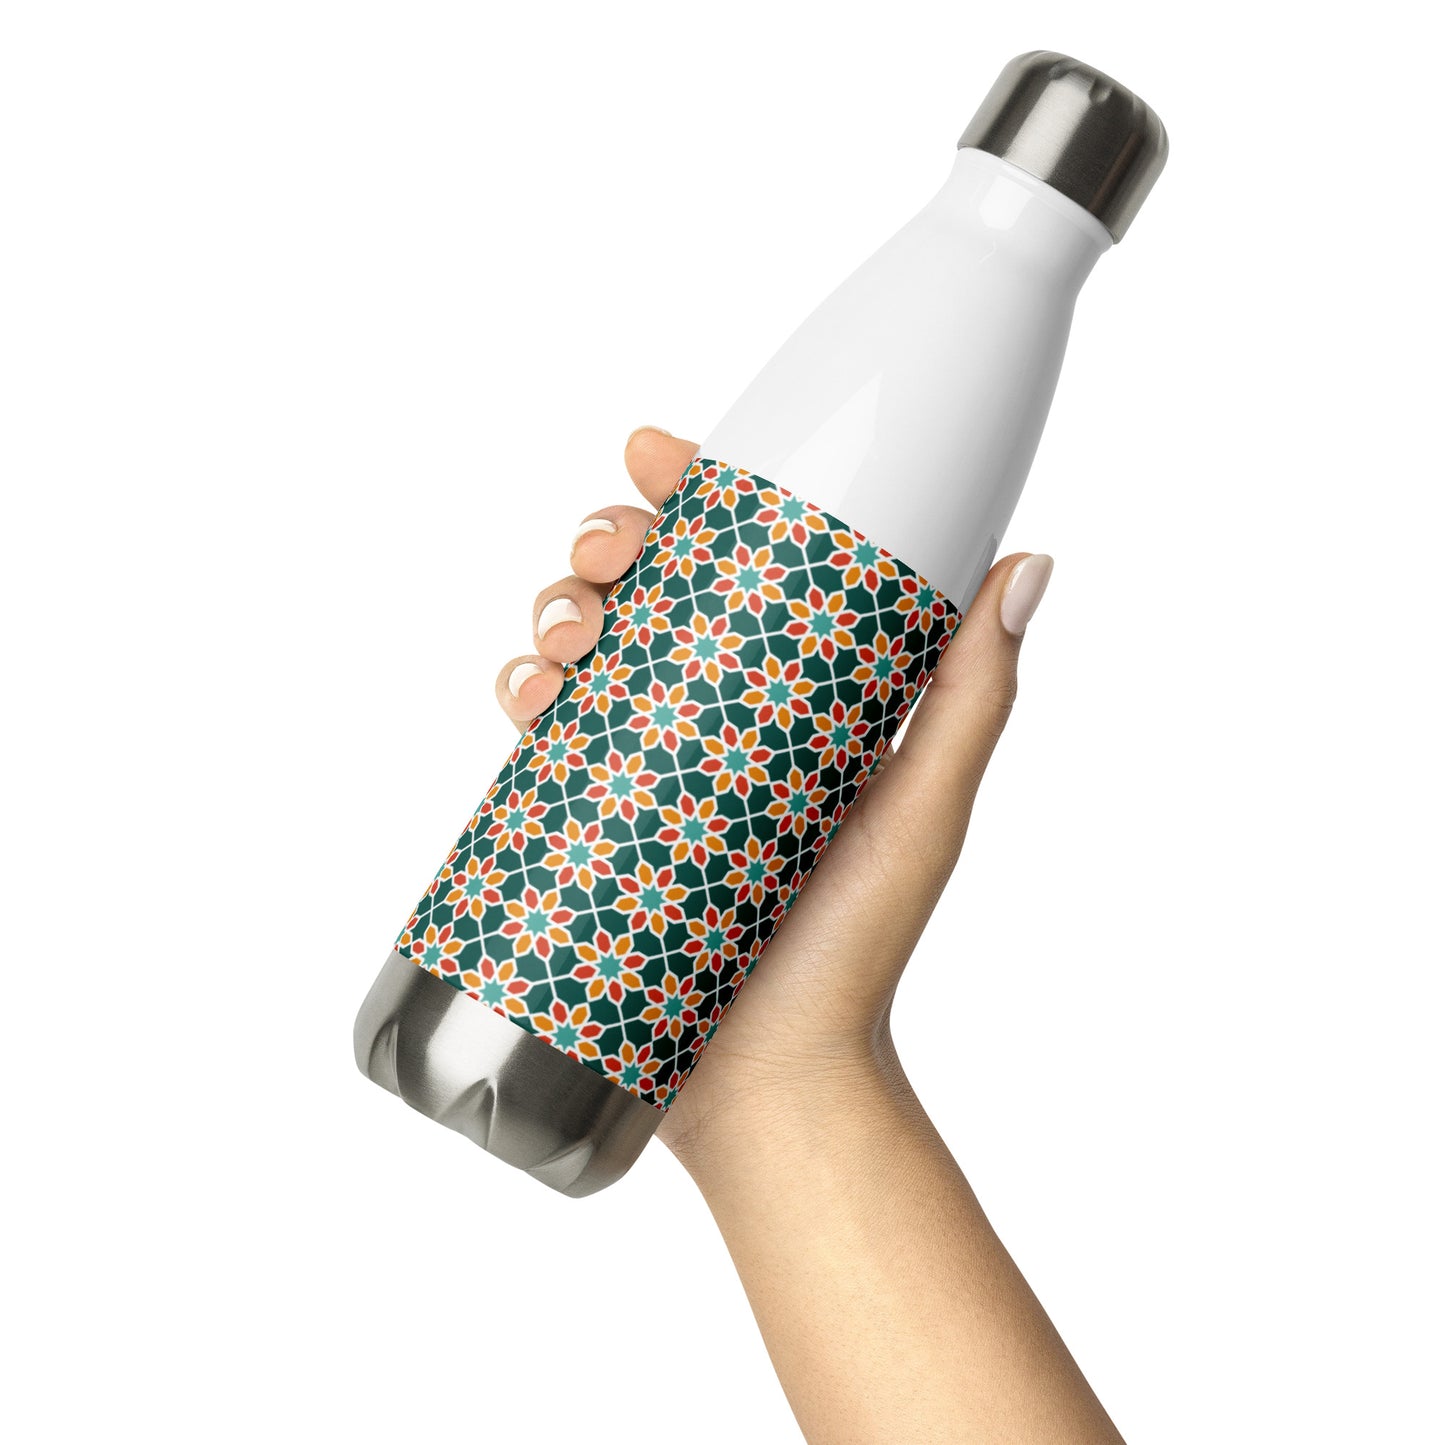 Stainless Steel Water Bottle - Geometric Desert Daisy